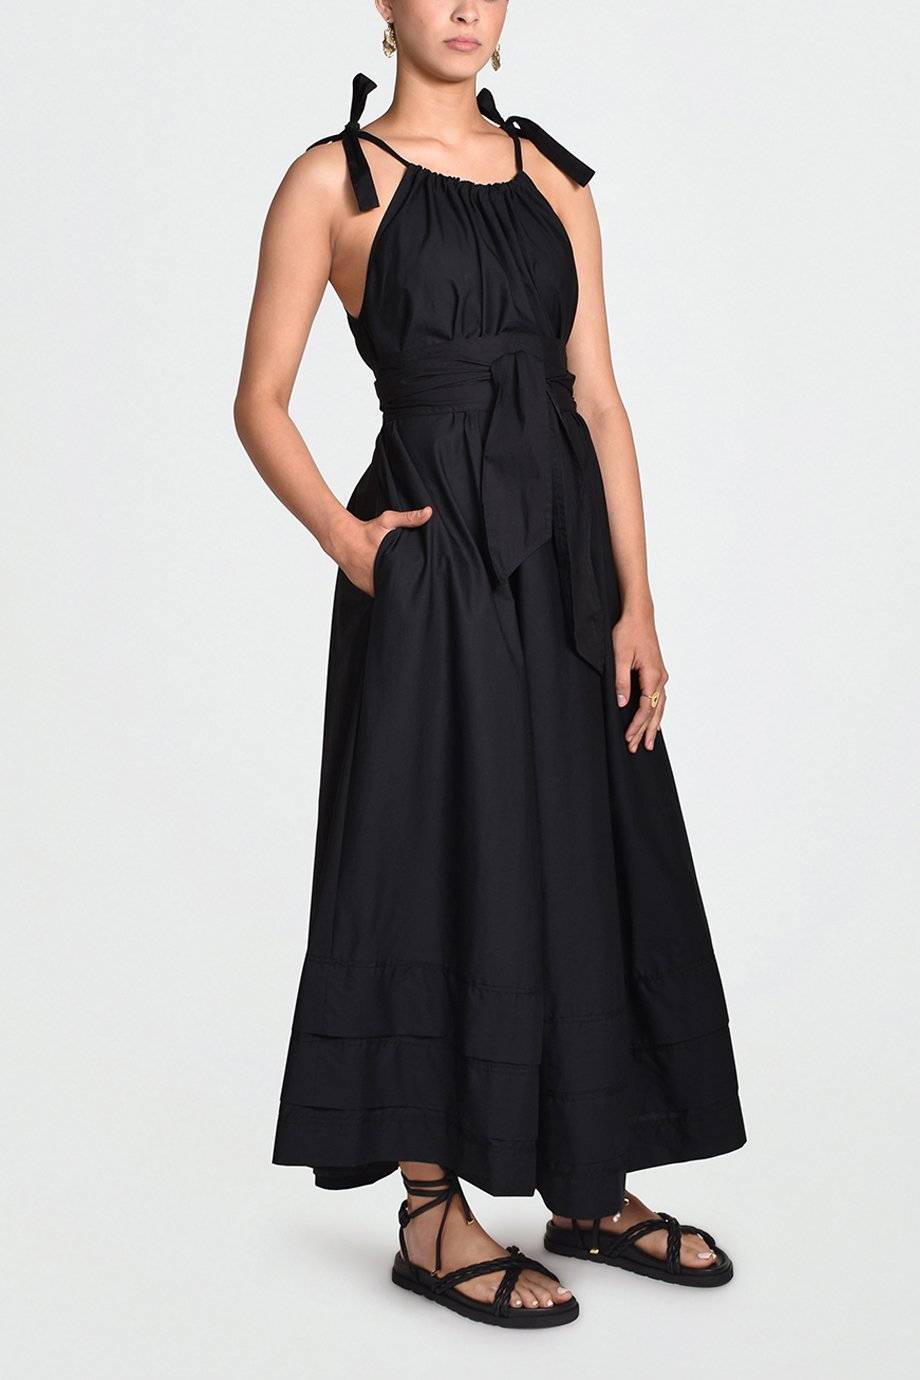 Husk Amalfi Dress - Black